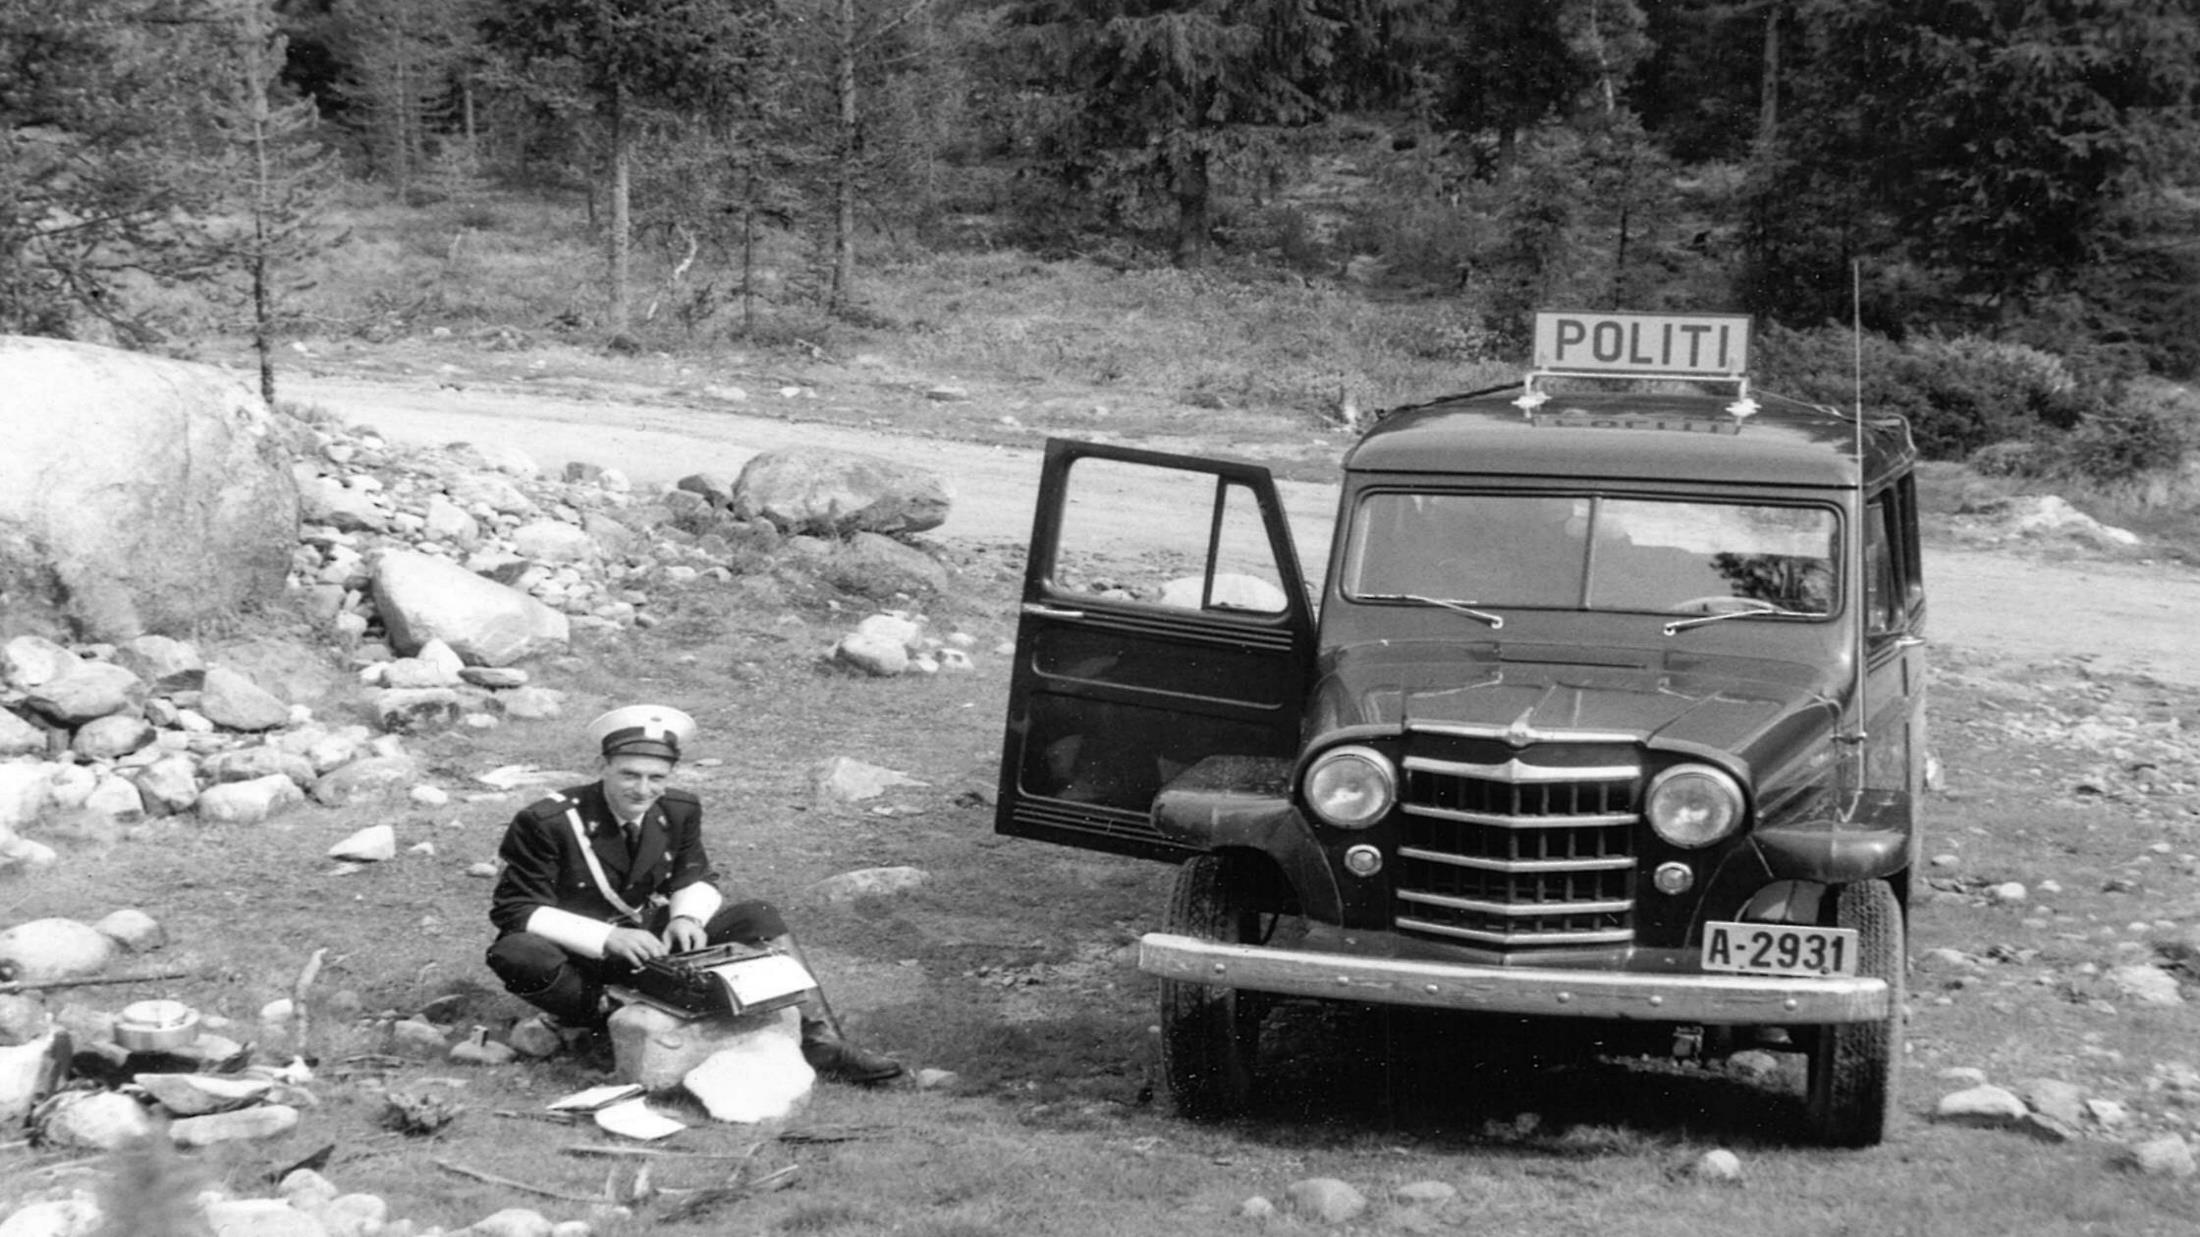 Politikonstabel Håkon Nergaard, Østerdalen 1958 Foto: UP VEST POLICE